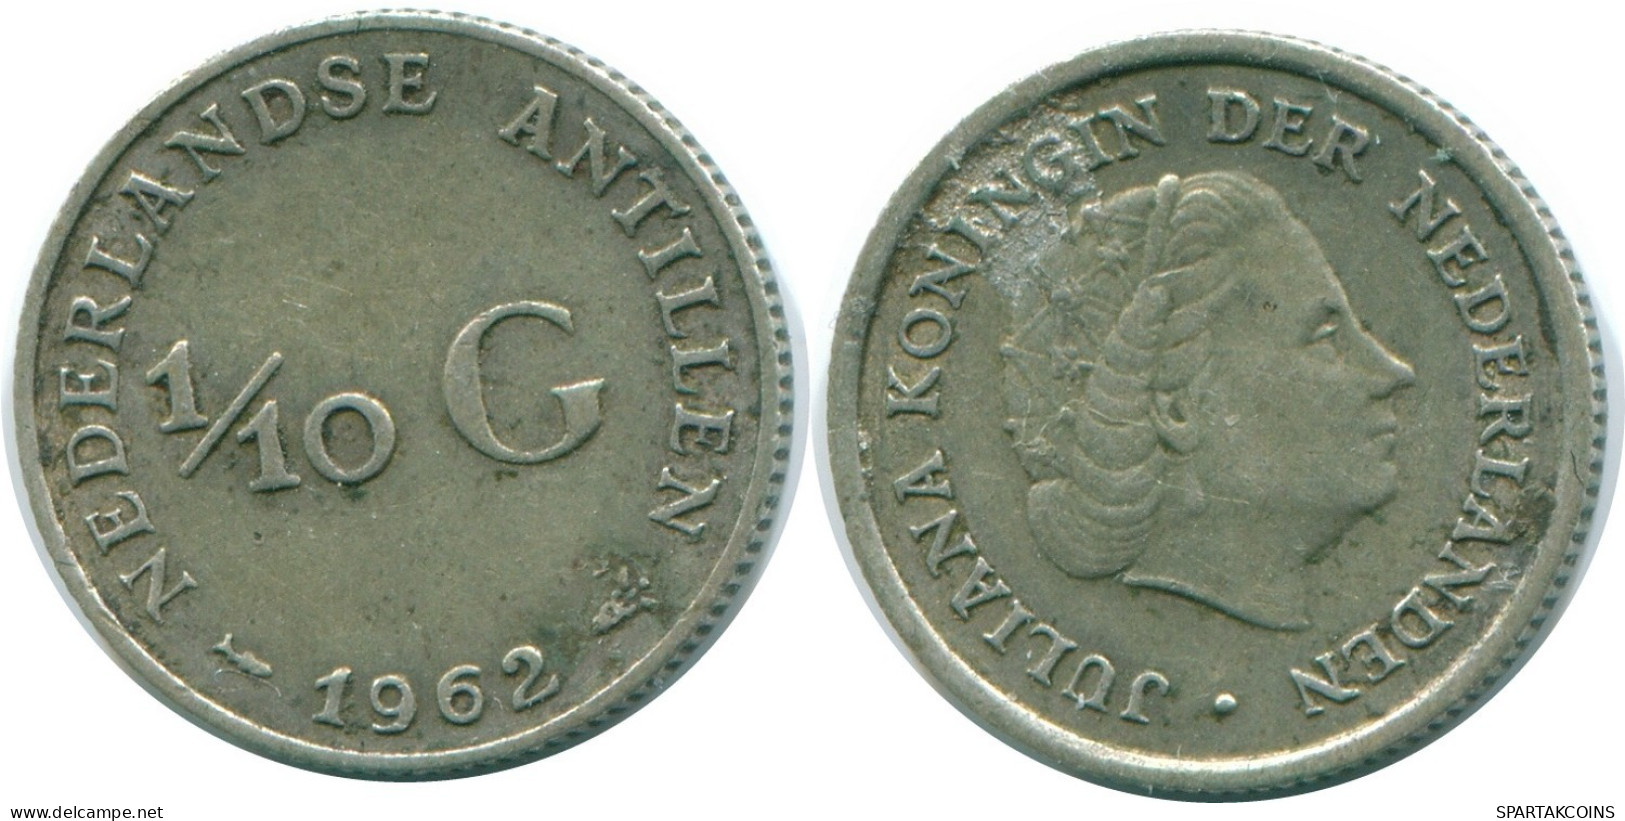 1/10 GULDEN 1962 NIEDERLÄNDISCHE ANTILLEN SILBER Koloniale Münze #NL12436.3.D.A - Niederländische Antillen